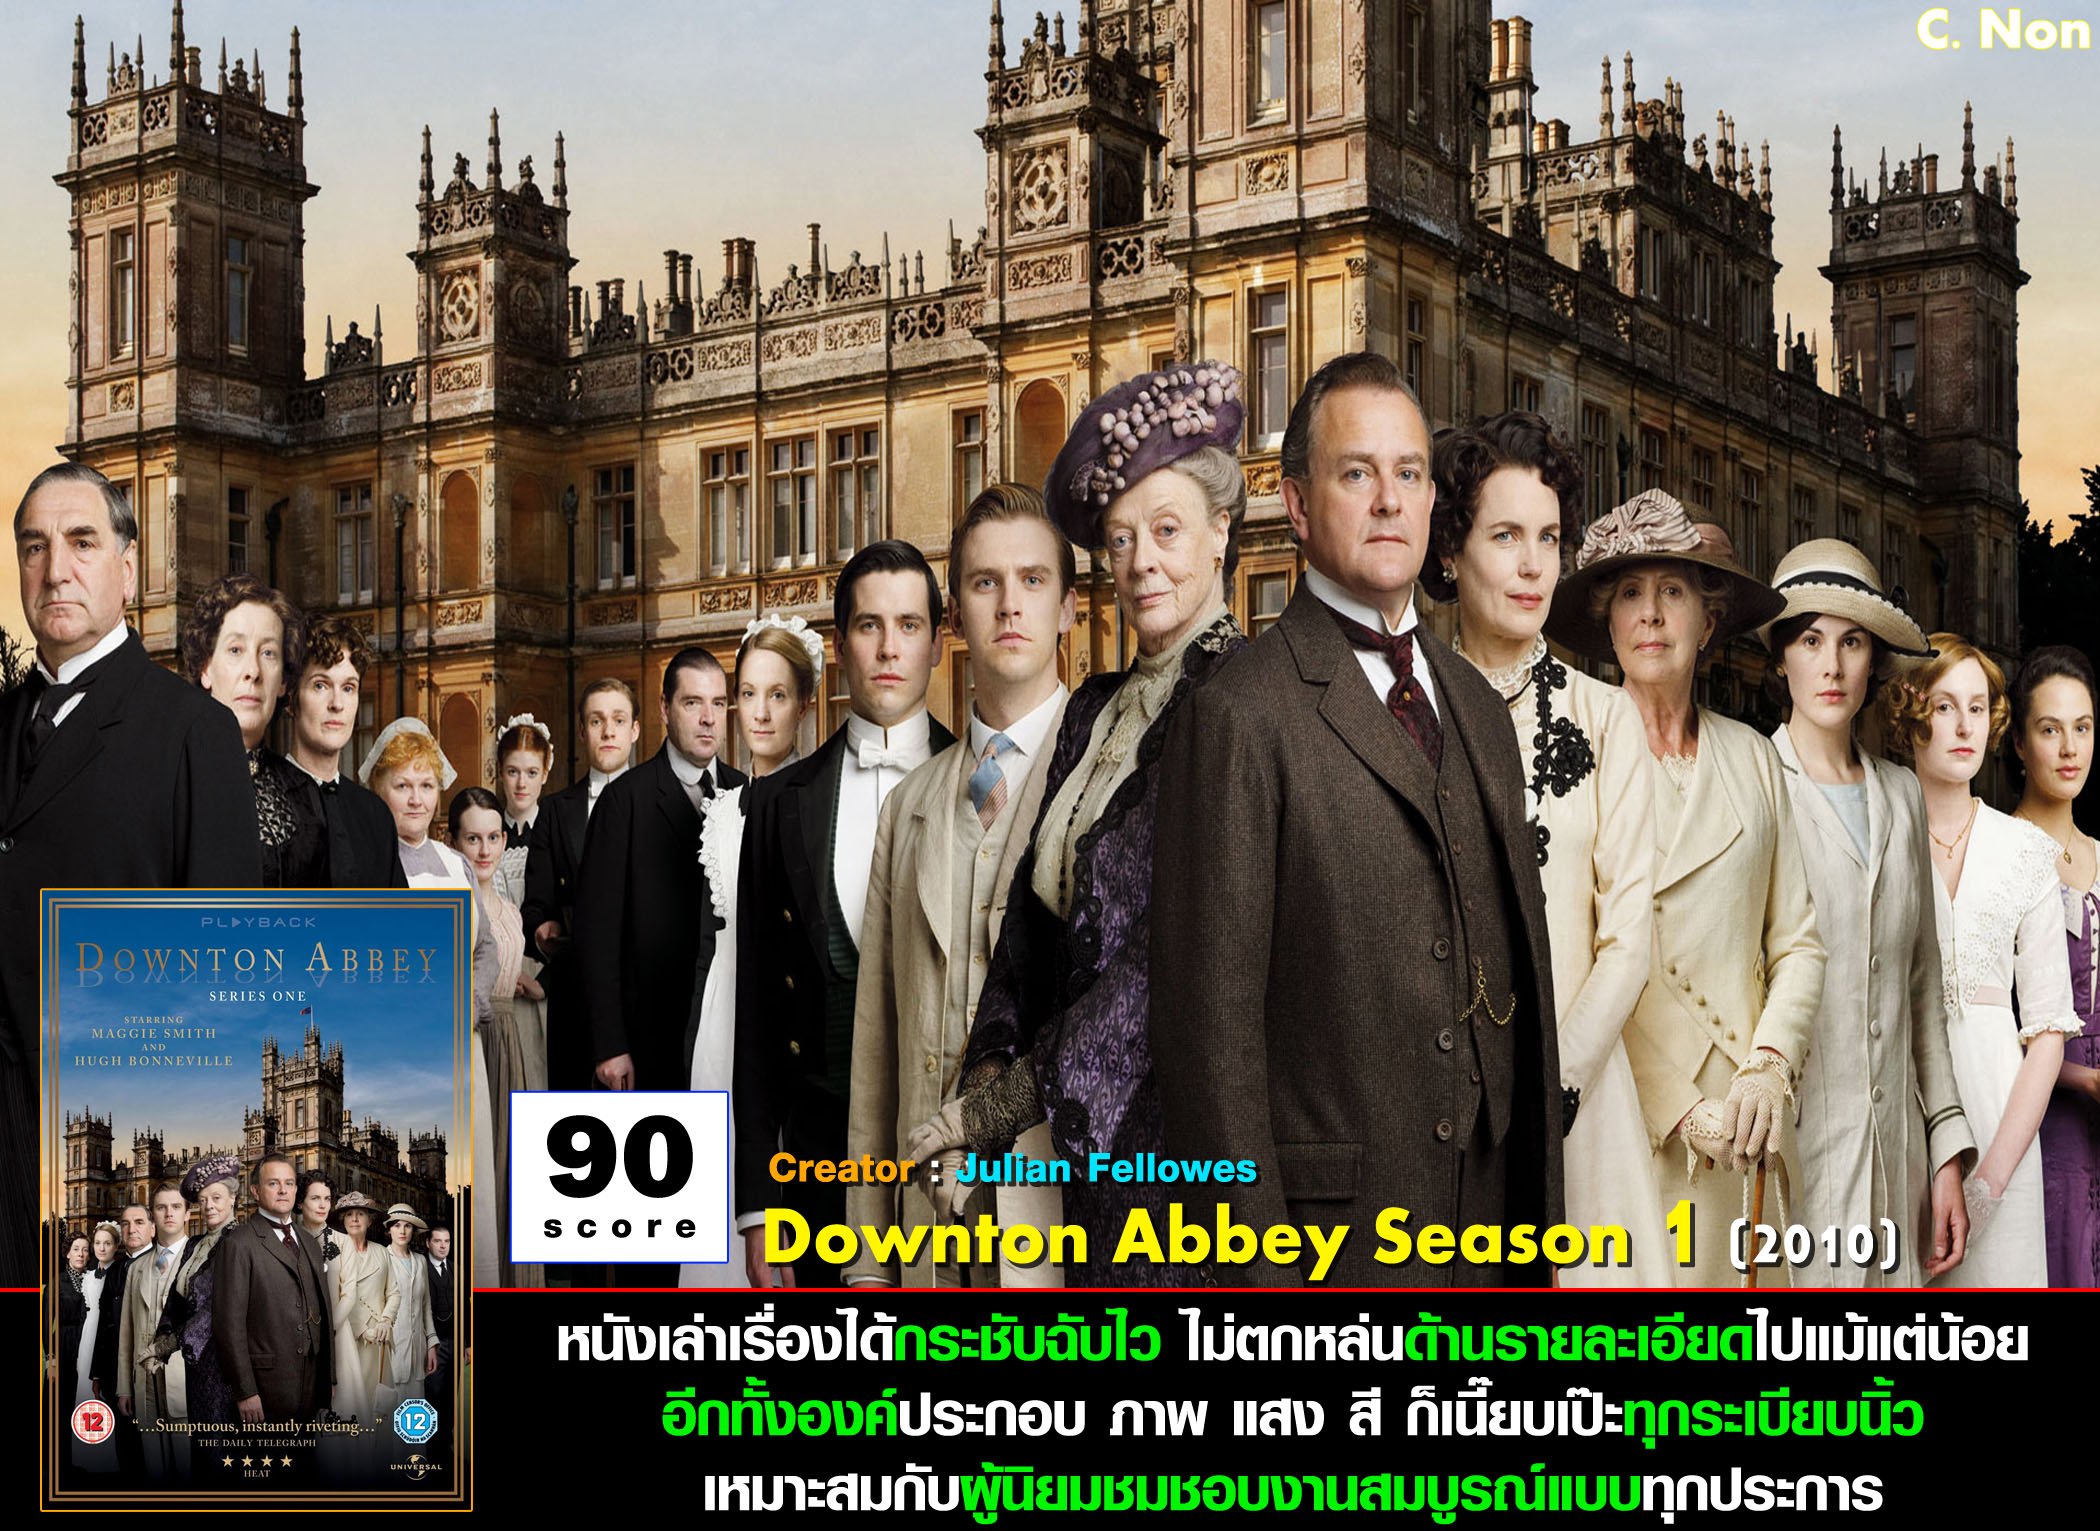 download downton abbey season 1 free